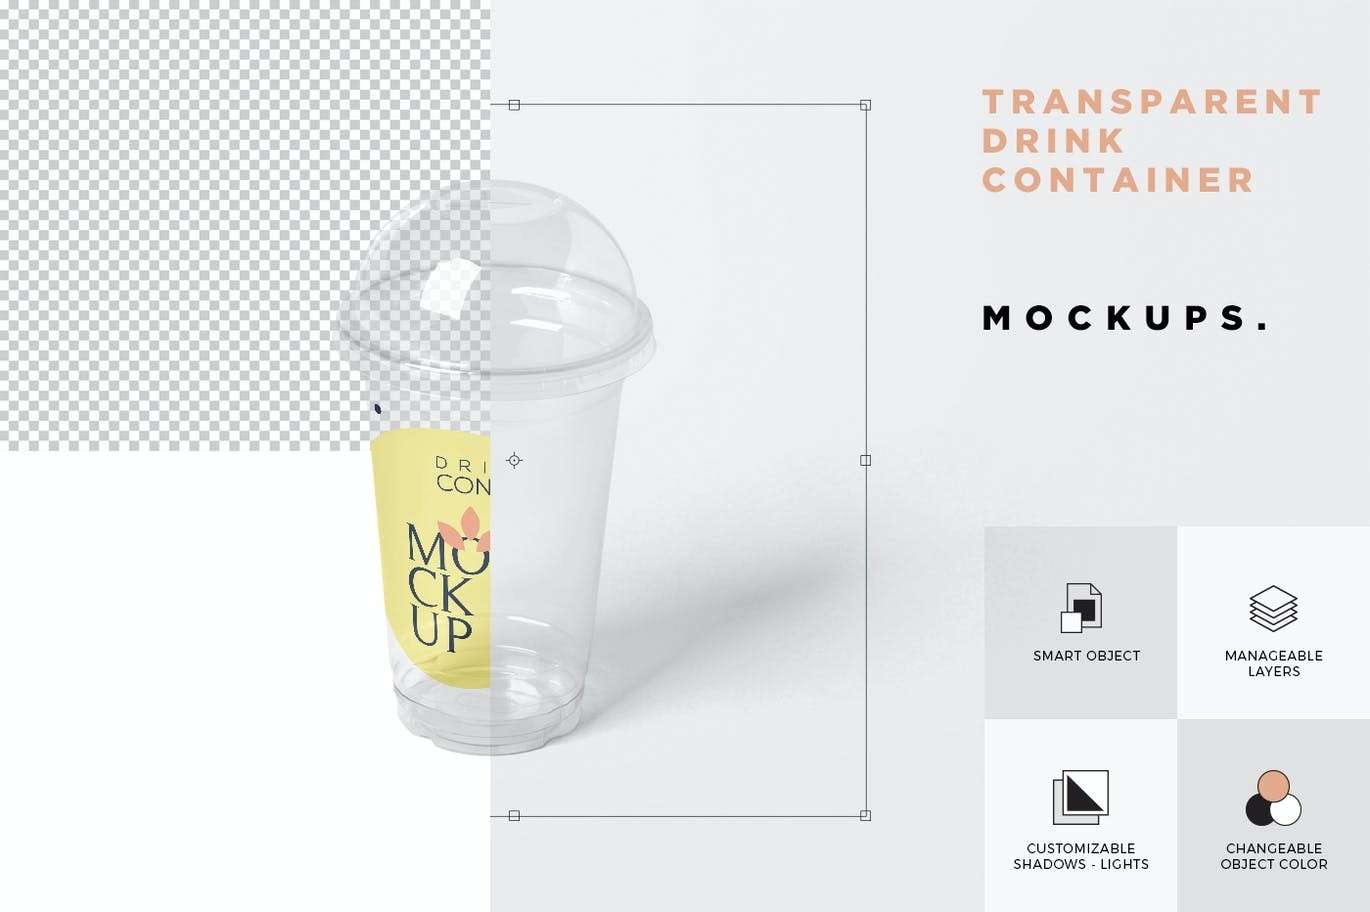 塑料果汁饮料杯包装设计样机模板PSD 样机素材 第2张